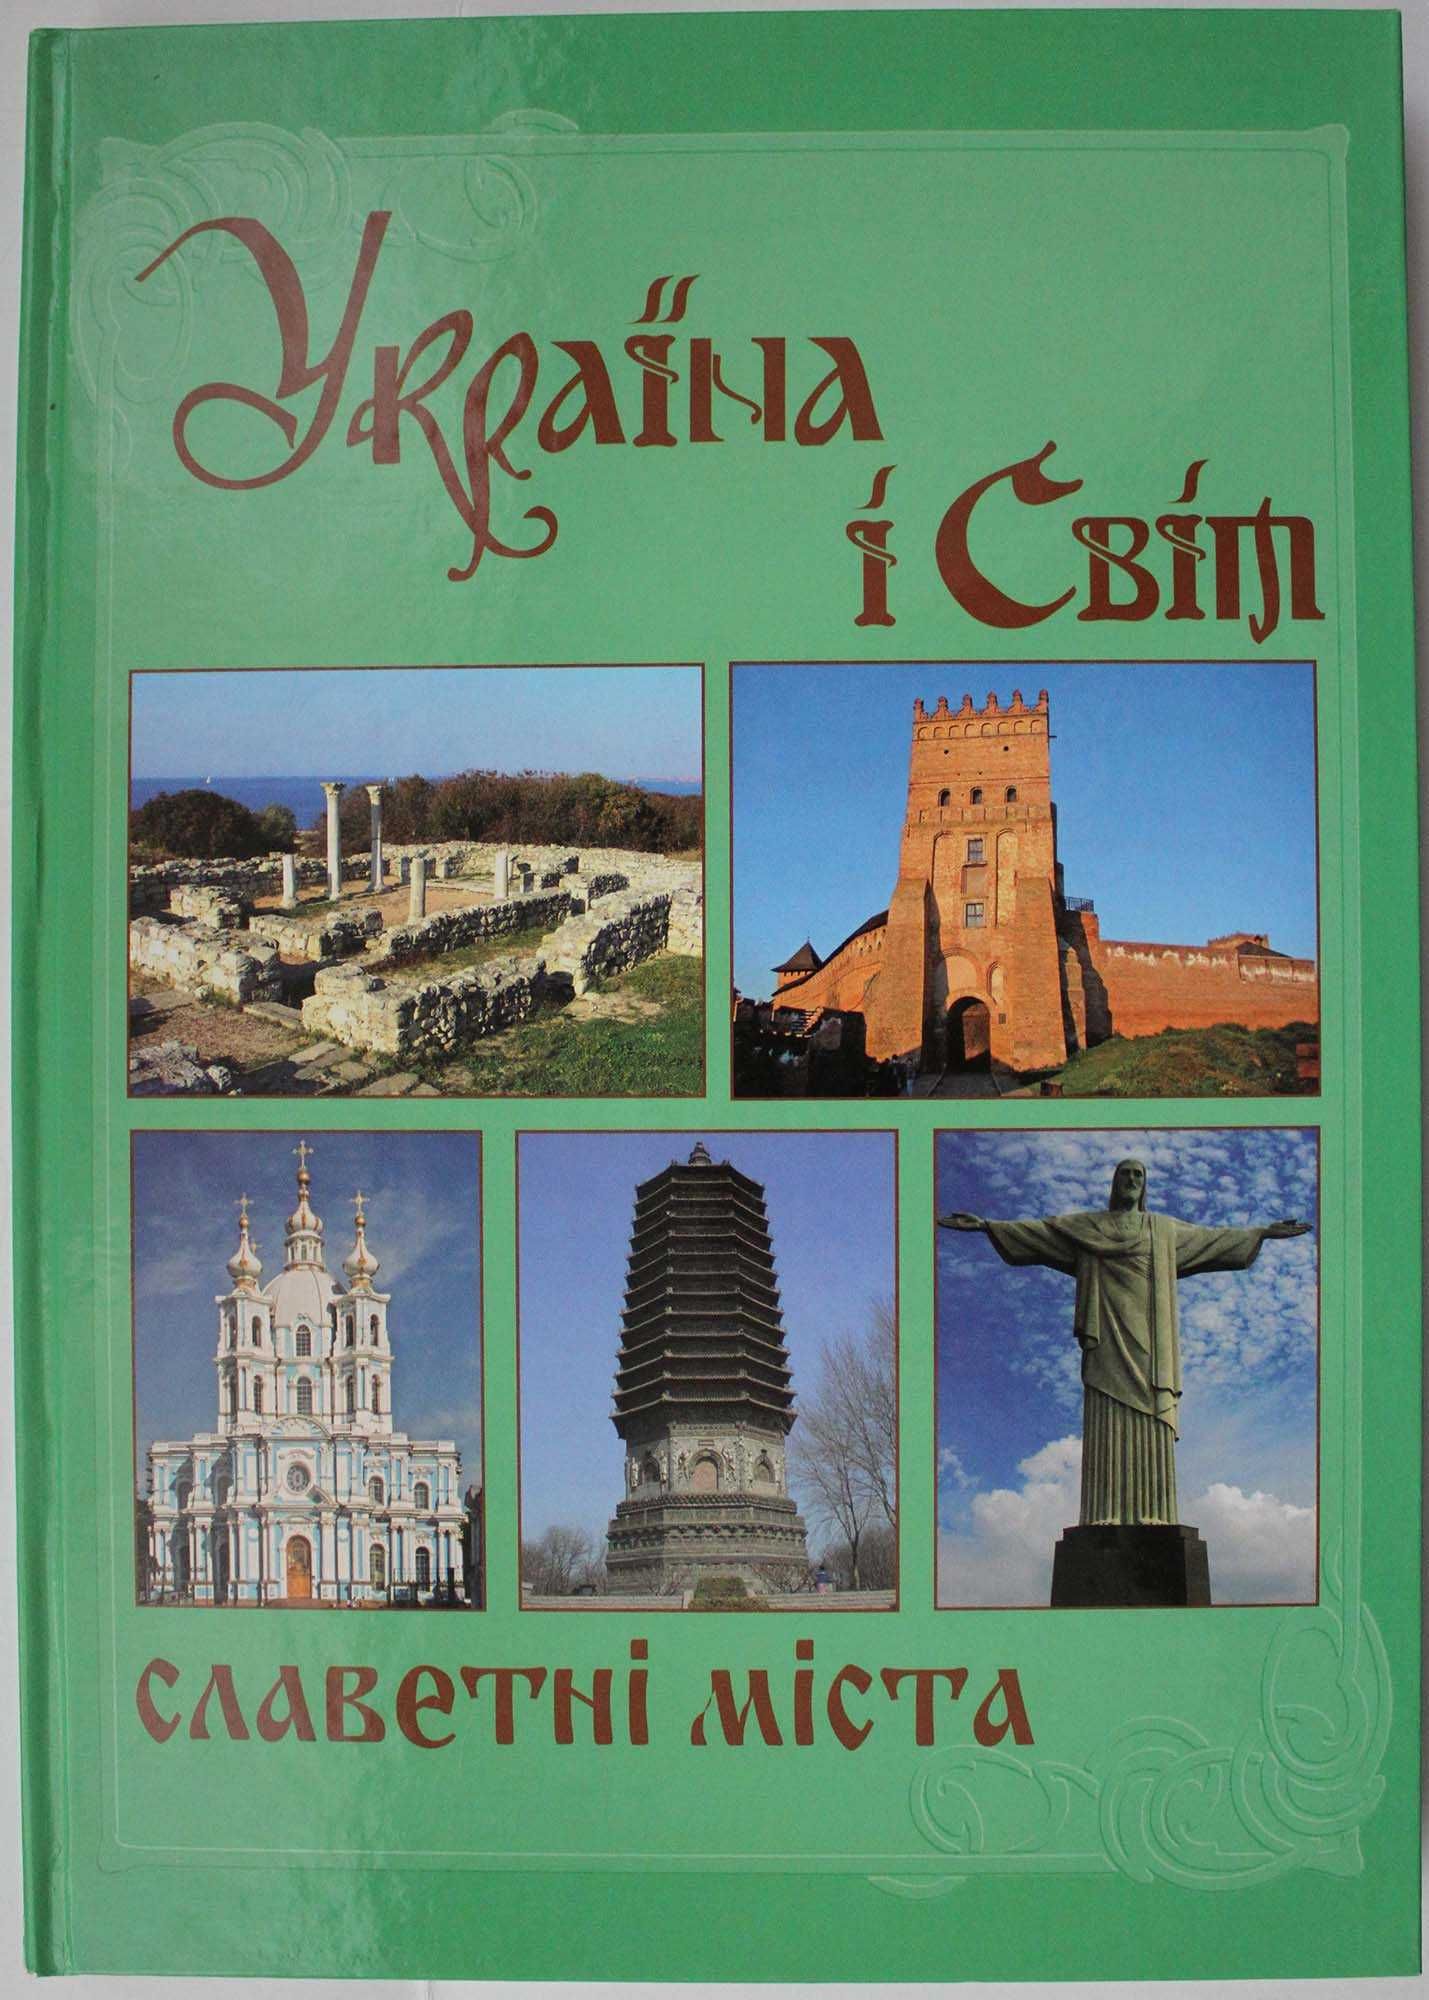 Історія України, 8 книг